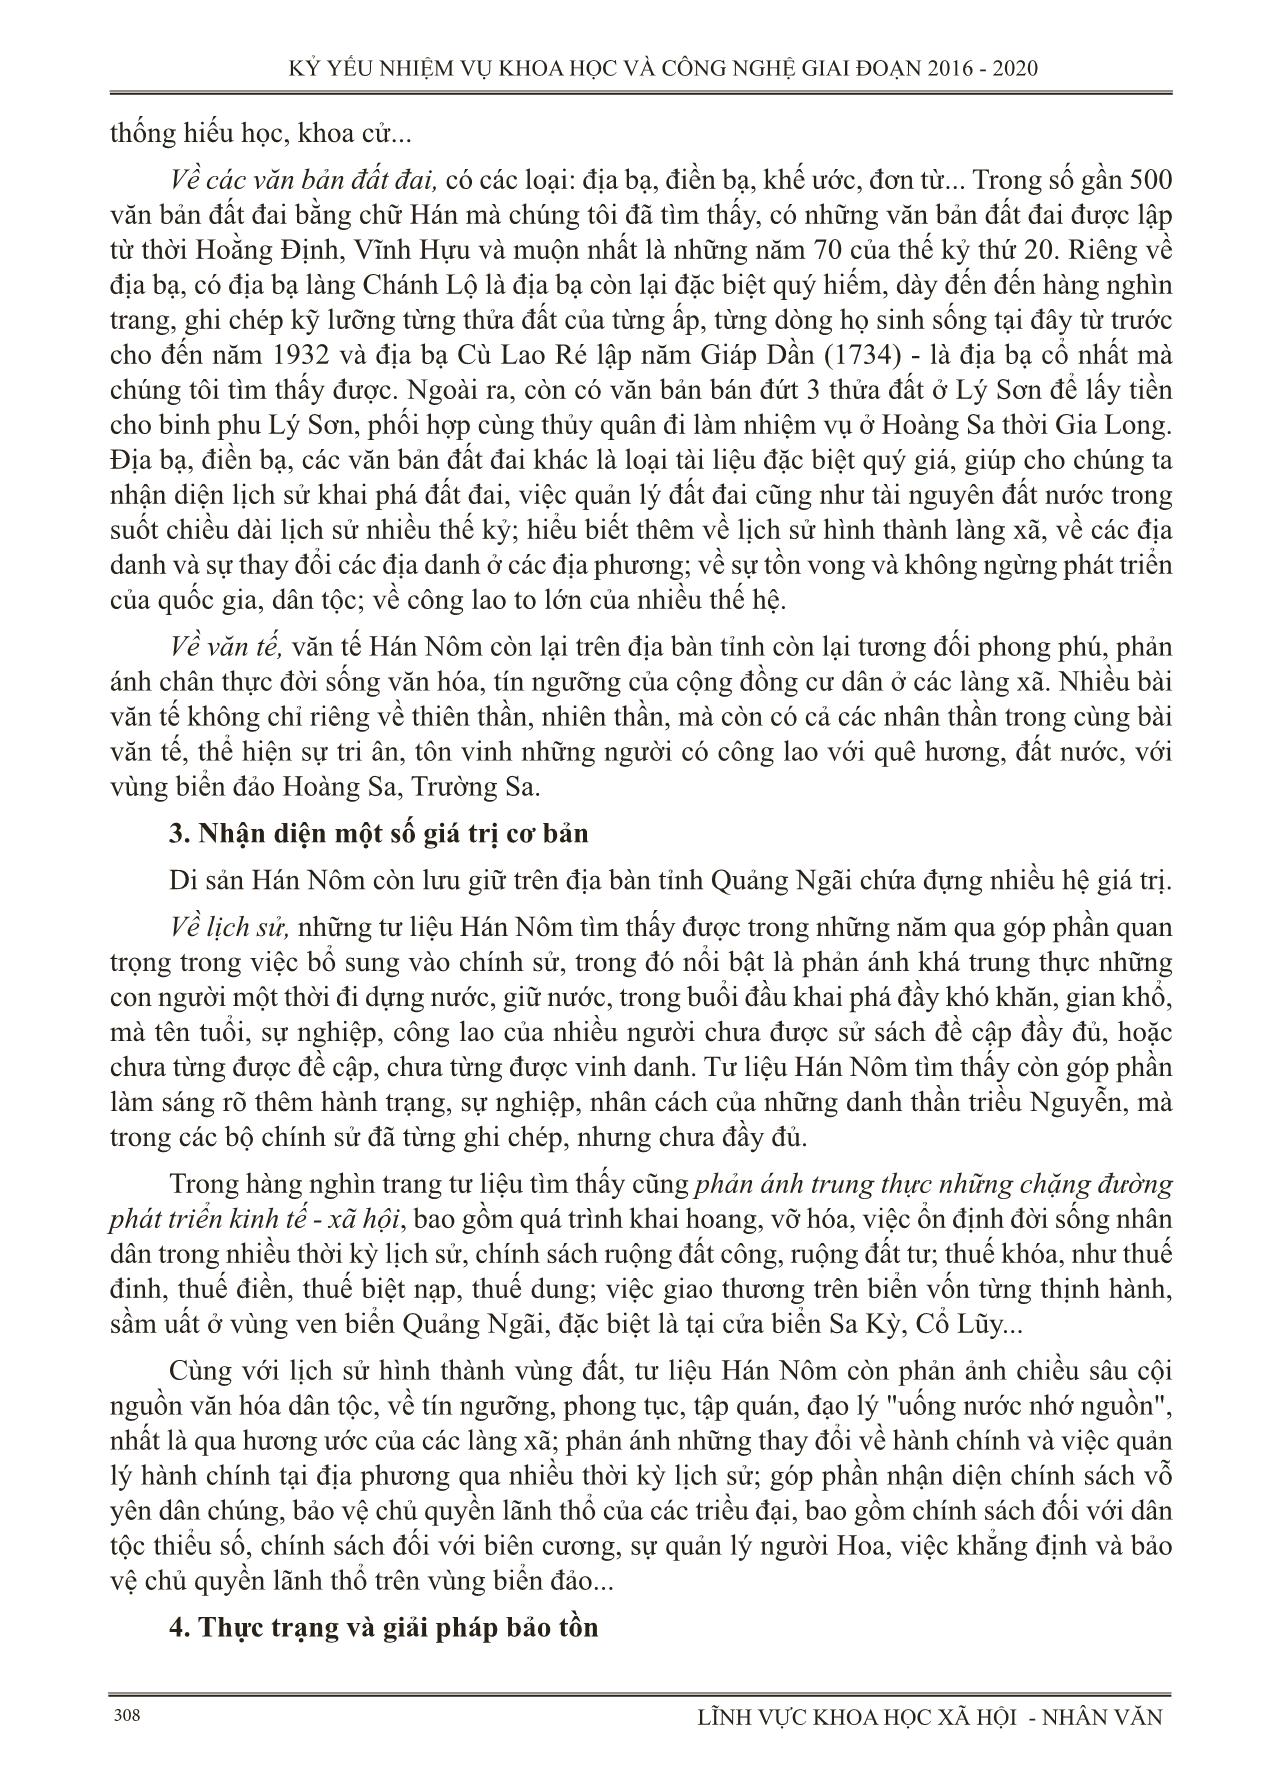 Sưu tầm, dịch thuật, phân loại và đánh giá tư liệu Hán Nôm ở Quảng Ngãi trang 3